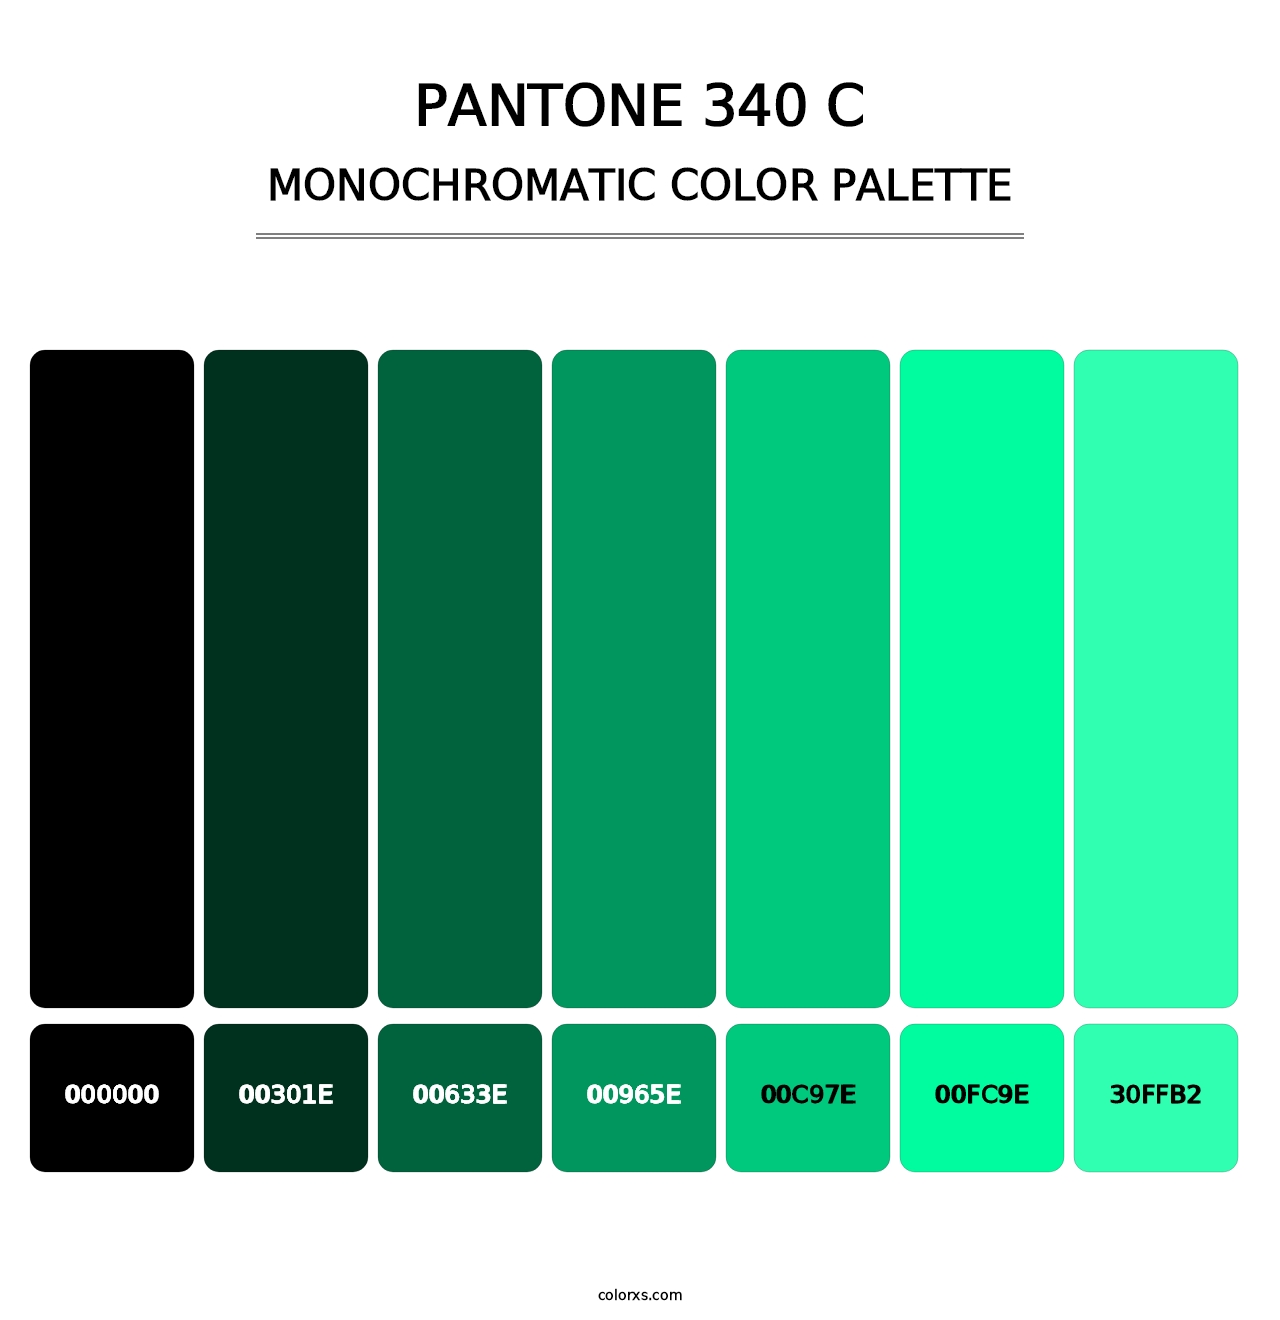 PANTONE 340 C - Monochromatic Color Palette